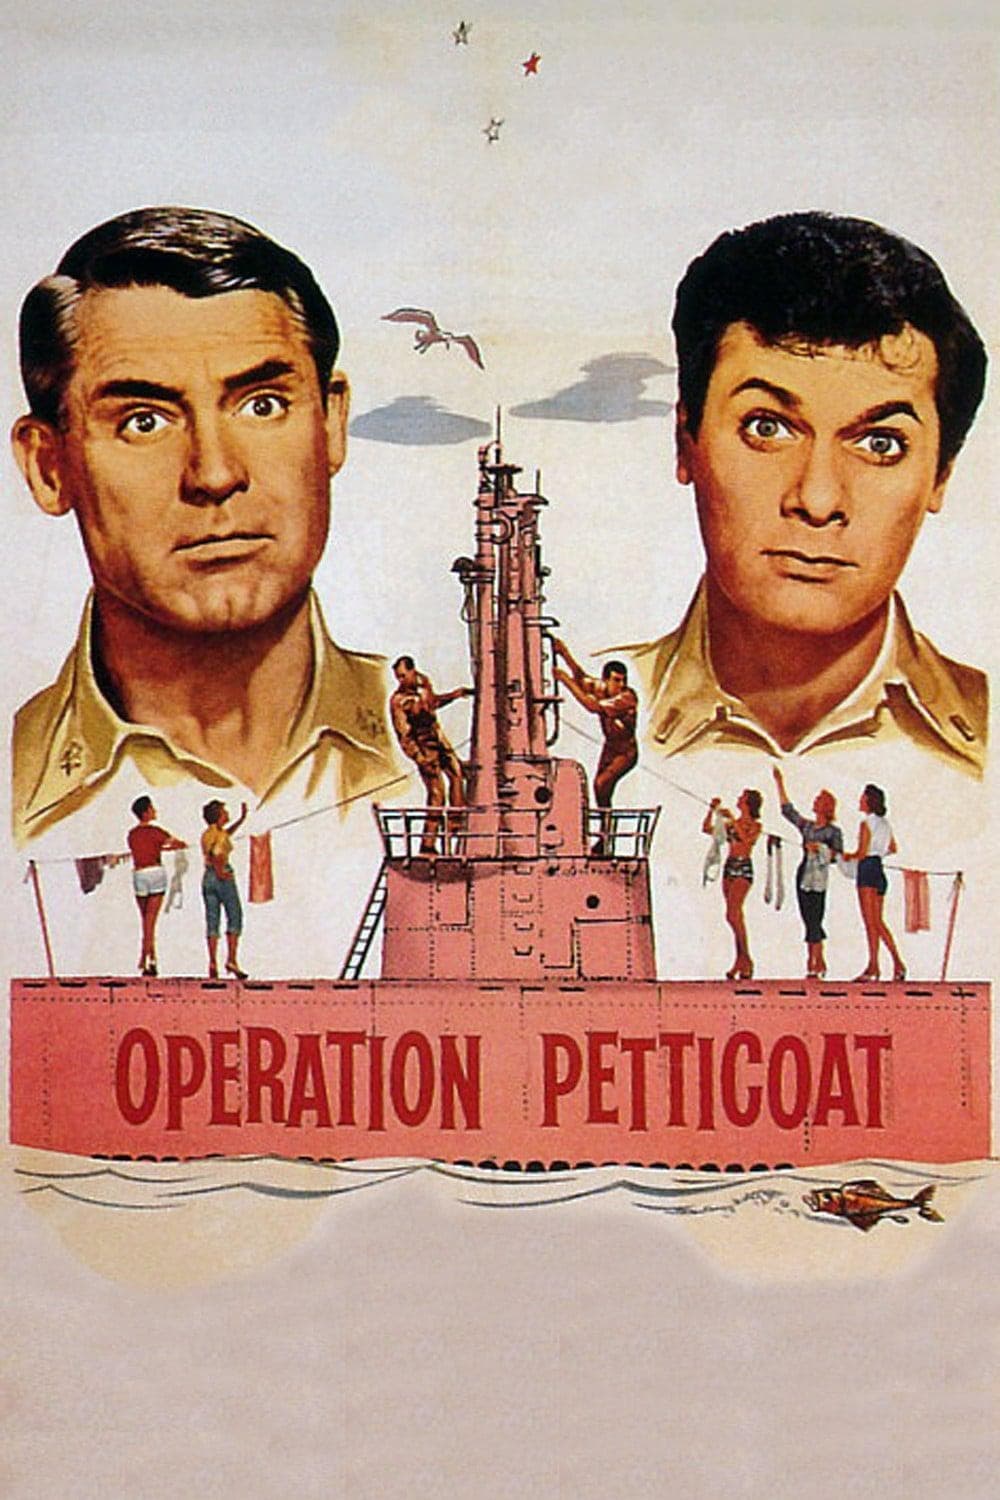 Operación Pacífico (1959)